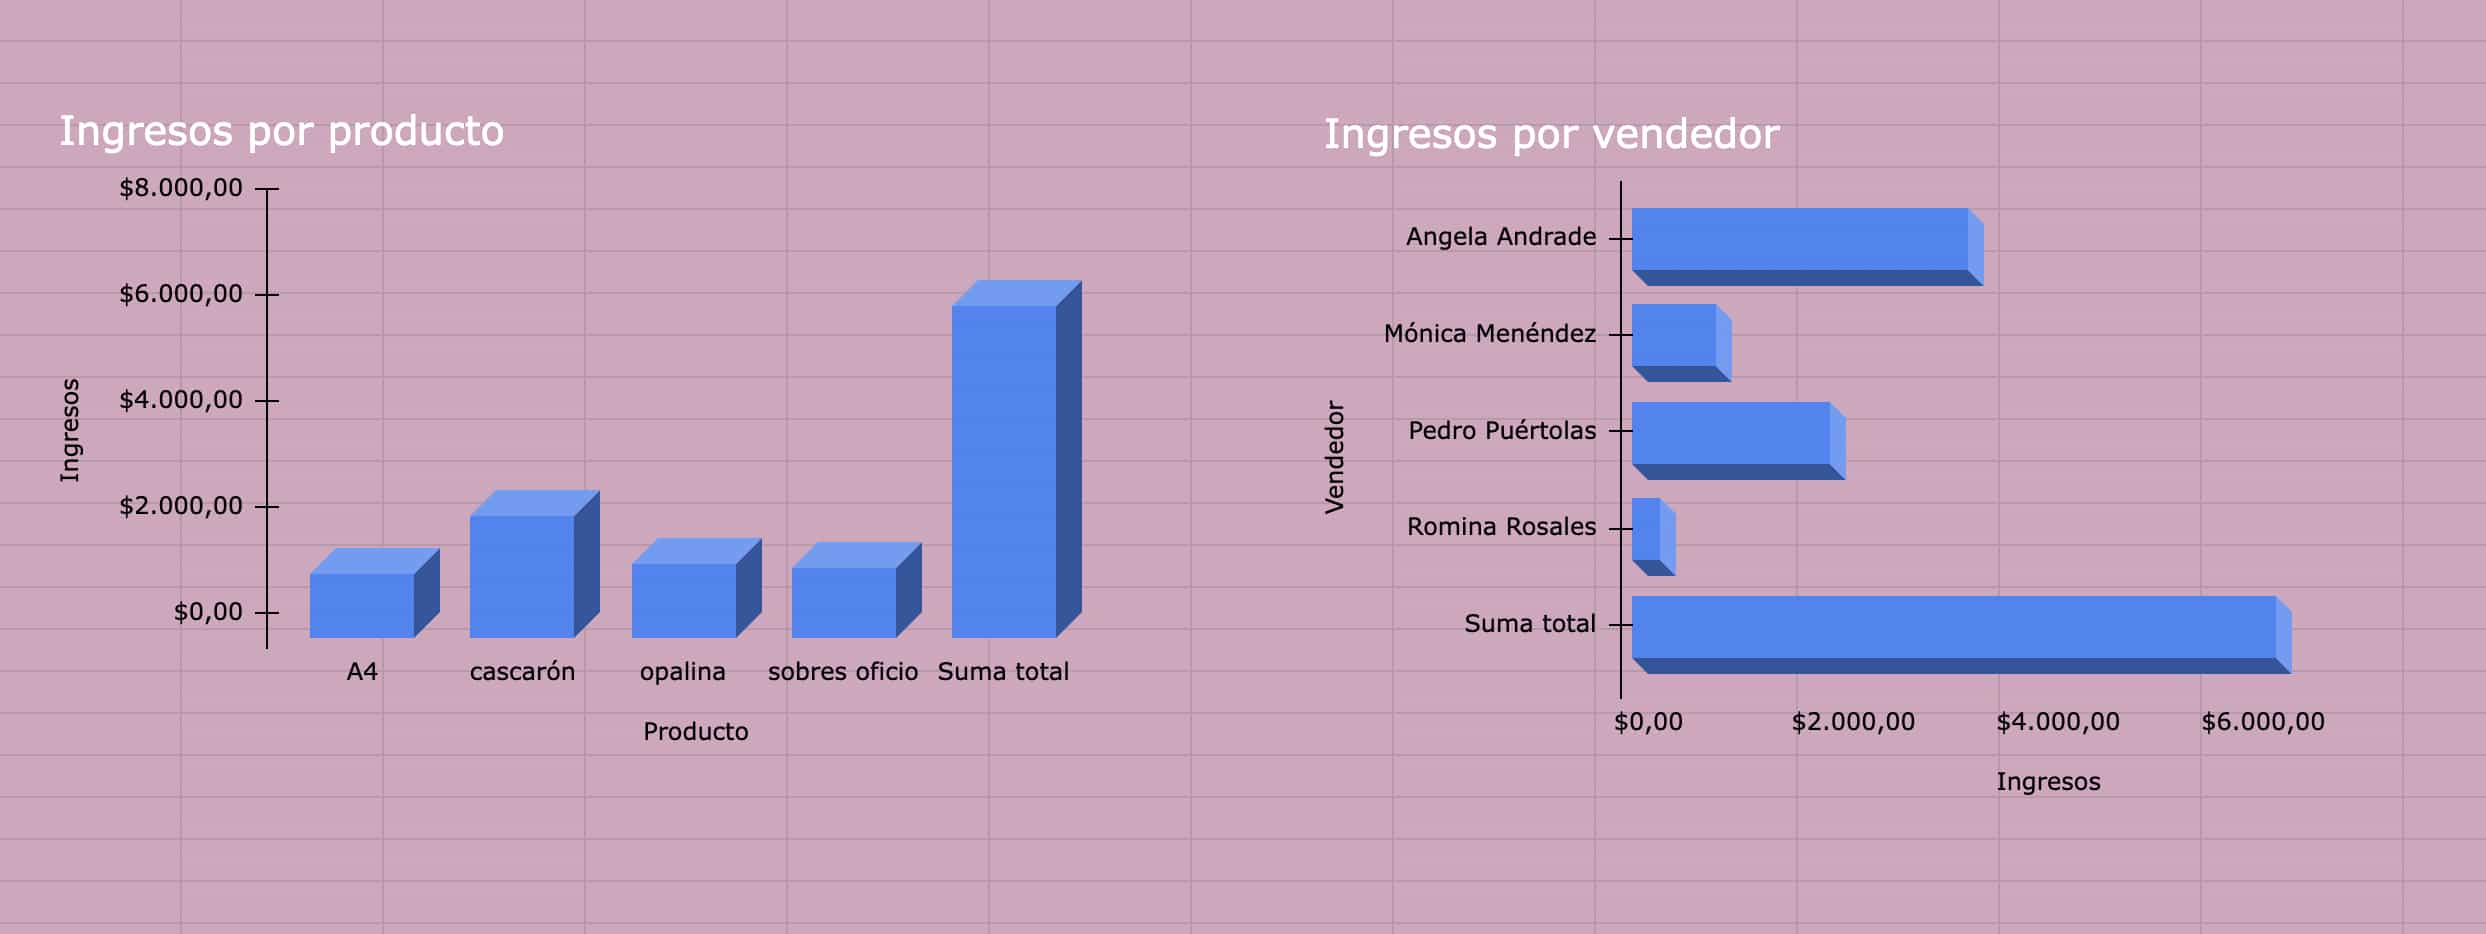 Ejemplo de edición de gráficos de tablas dinámicas para crear un dashboard de ventas en Excel